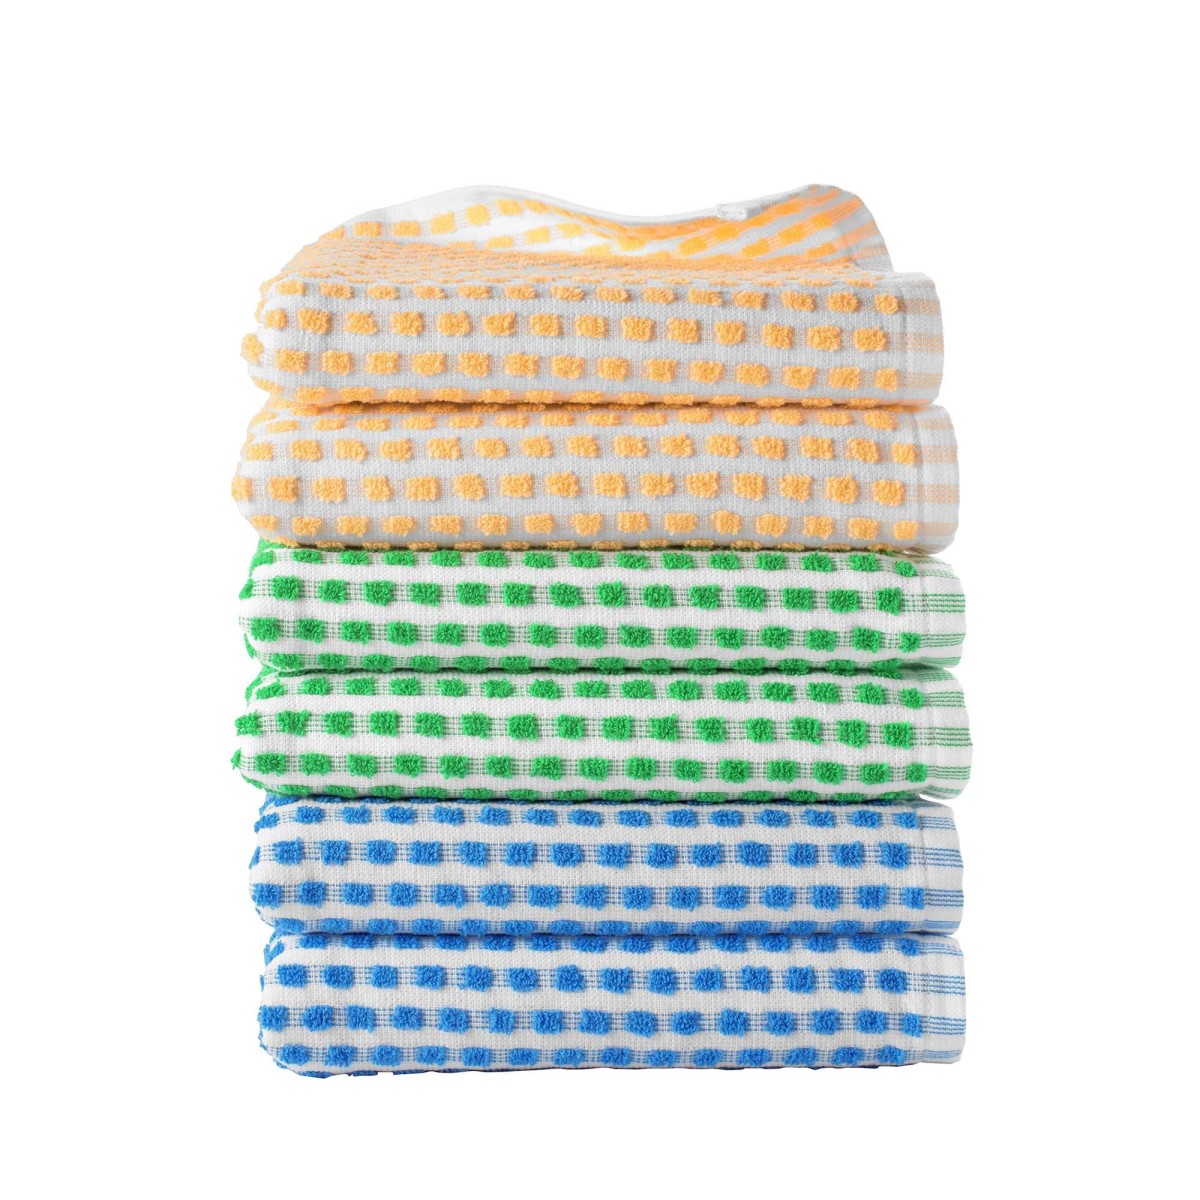 Velké froté ručníky na ruce, 3 barvy, sada 6 nebo 12 ks